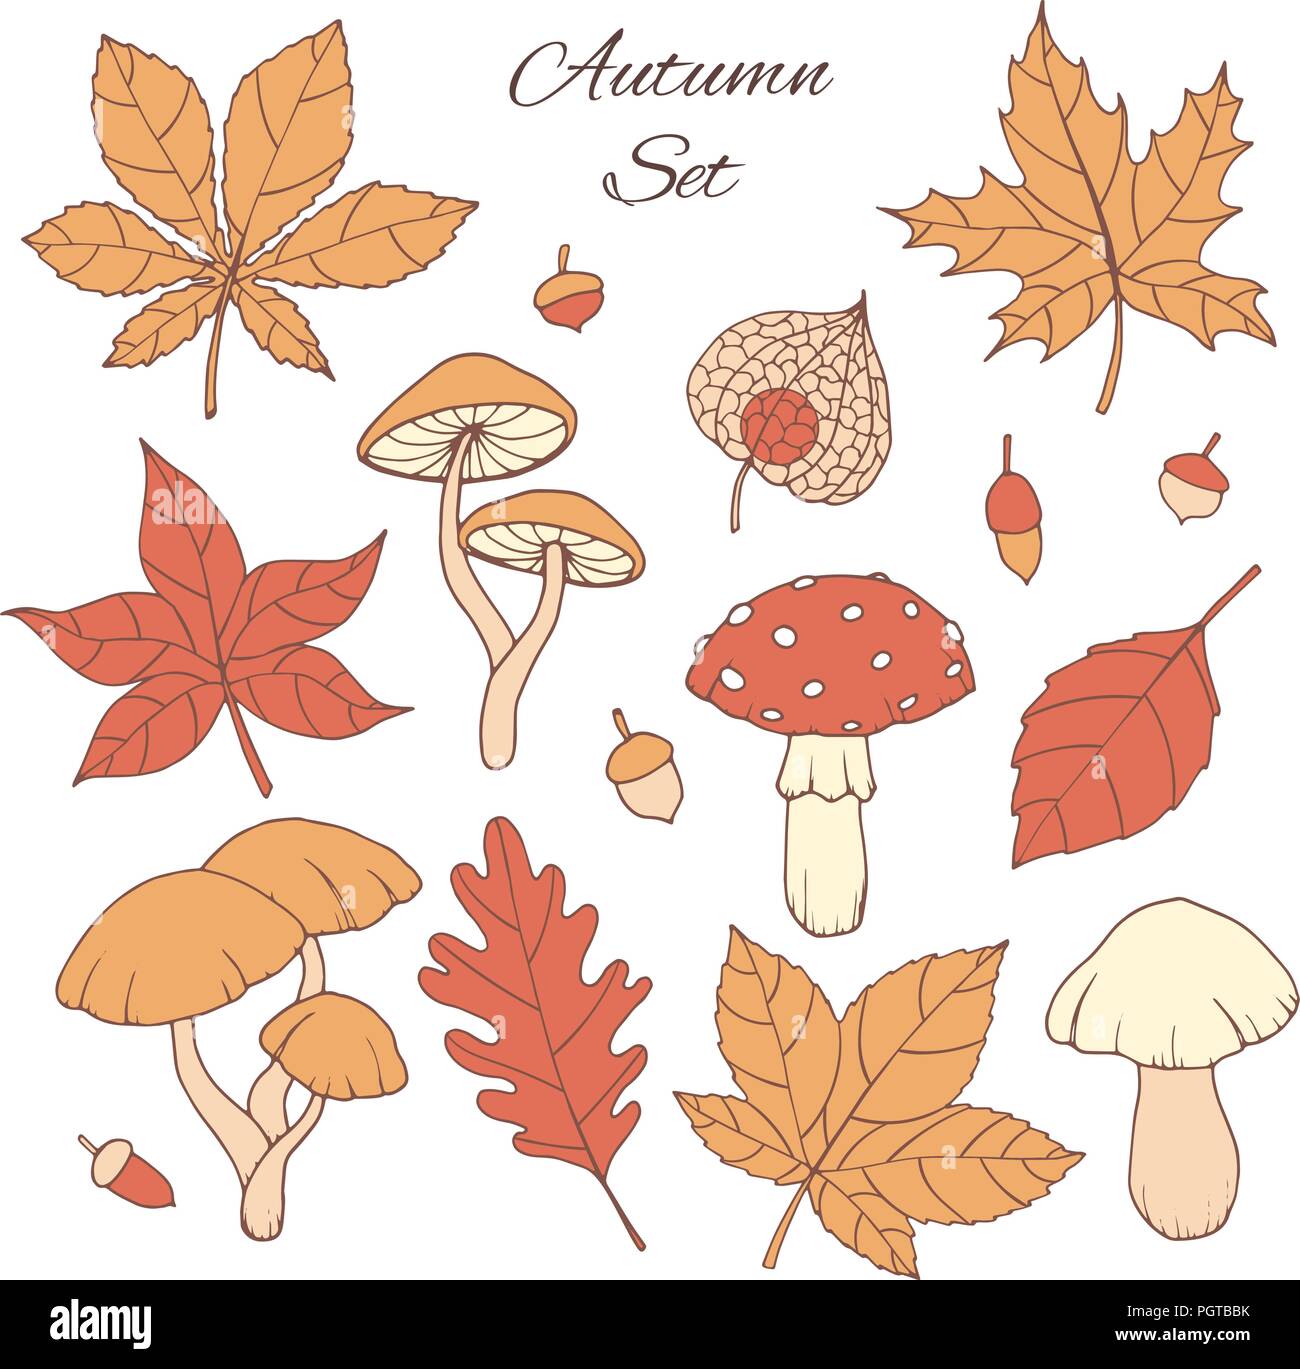 Hand drawn vector set d'automne avec le chêne, peuplier, hêtre, érable, de trembles et de feuilles de marronnier, des champignons, des glands et physalis isolé sur le bac blanc Illustration de Vecteur